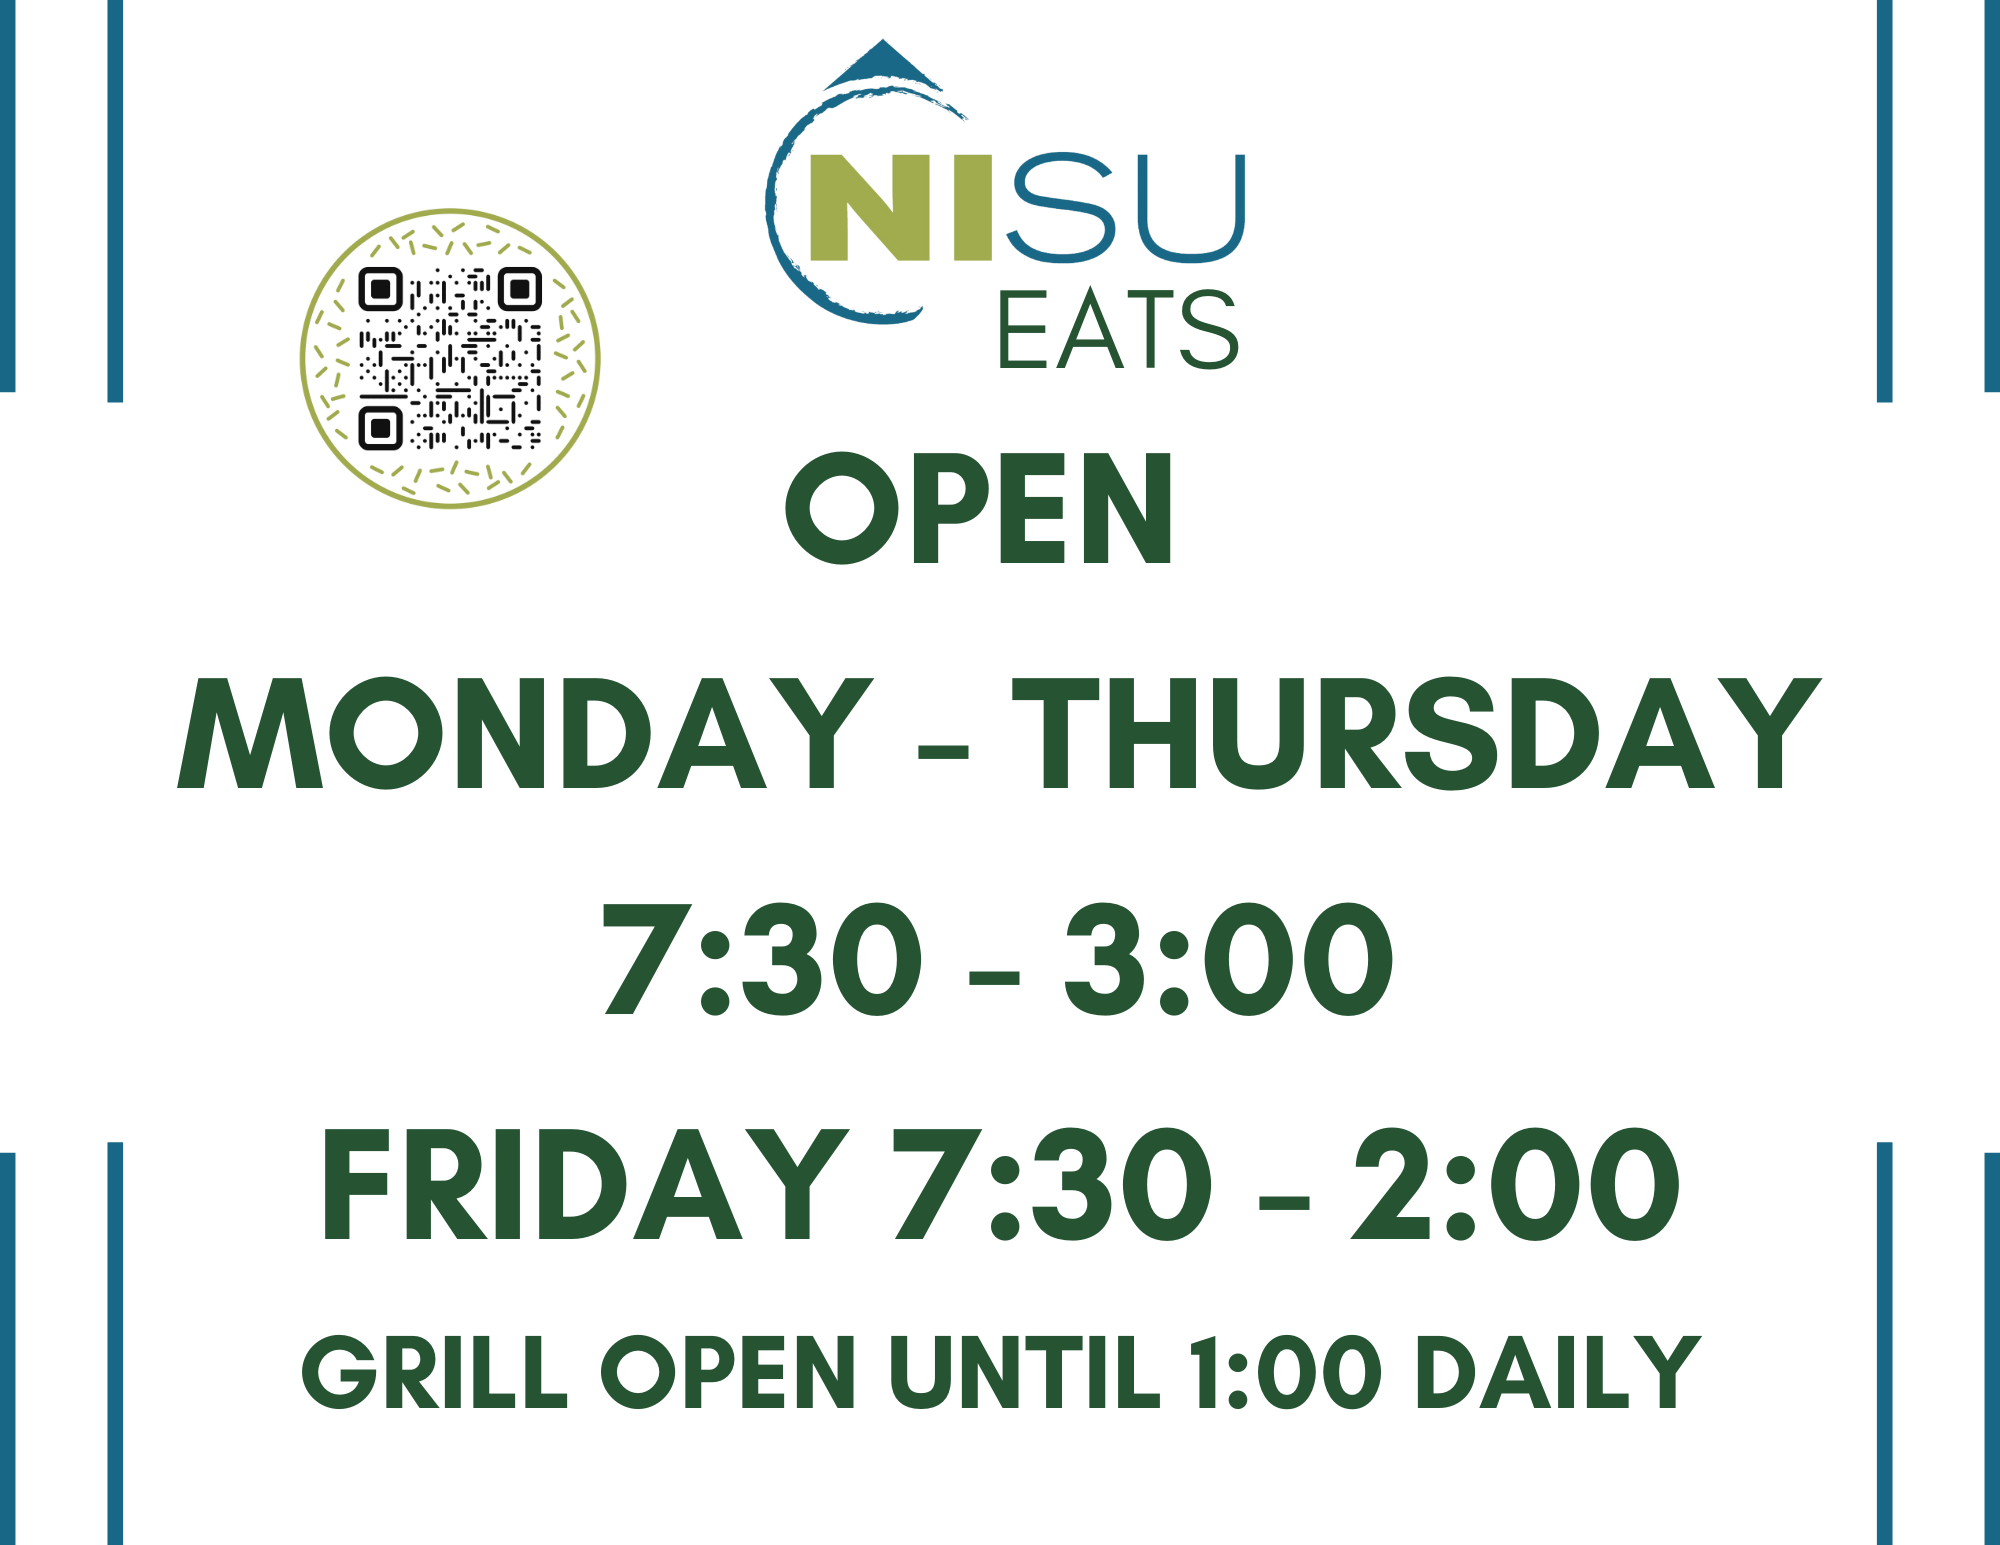 NISU Eats Hours